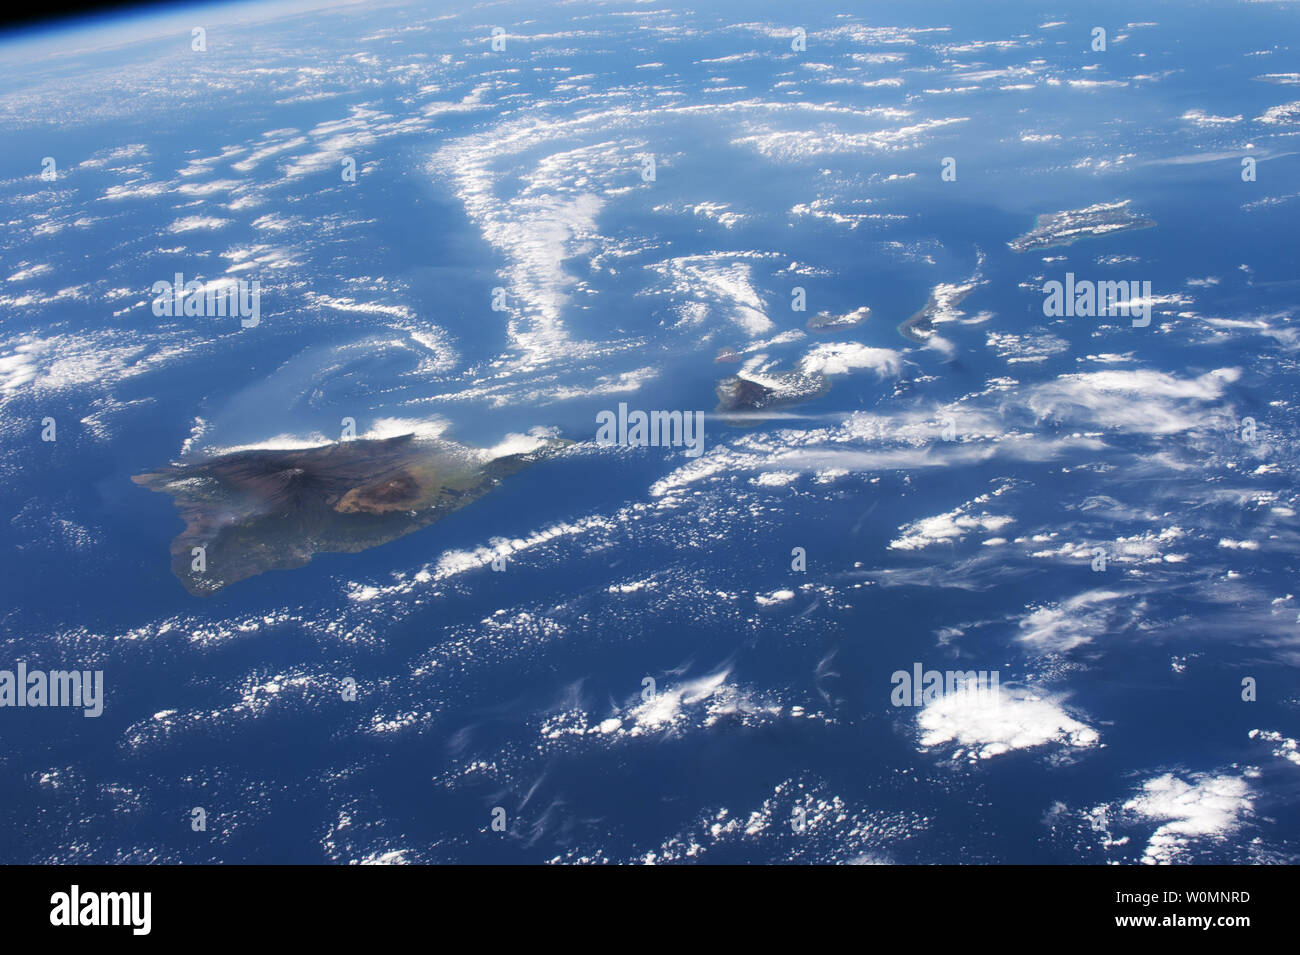 Die Besatzungen an Bord der Internationalen Raumstation dieses Panorama von Hawaii Kilauea erfasst (Bild links) Mit dem langen wirbelt der vulkanischen Gasen (obere Hälfte der Abbildung) wafting West vom Vulkan am 18. Februar 2015. Astronauten sind ausgebildete schräge Bilder von hart-zu-finden Sie unter atmosphärischen Dunst durch schräg Schießen um die Sichtbarkeit zu verbessern. Das gas Haze genannt, vog, einer Kombination aus Nebel, Smog und vulkanischen - ist auch in Hawaii bekannt und wird als "eine Form der Luftverschmutzung, Ergebnisse, wenn Schwefeldioxid und andere Gase durch einen ausbrechenden Vulkan ausgestossen… reagieren mit Sauerstoff und Feuchtigkeit in den definierten Stockfoto